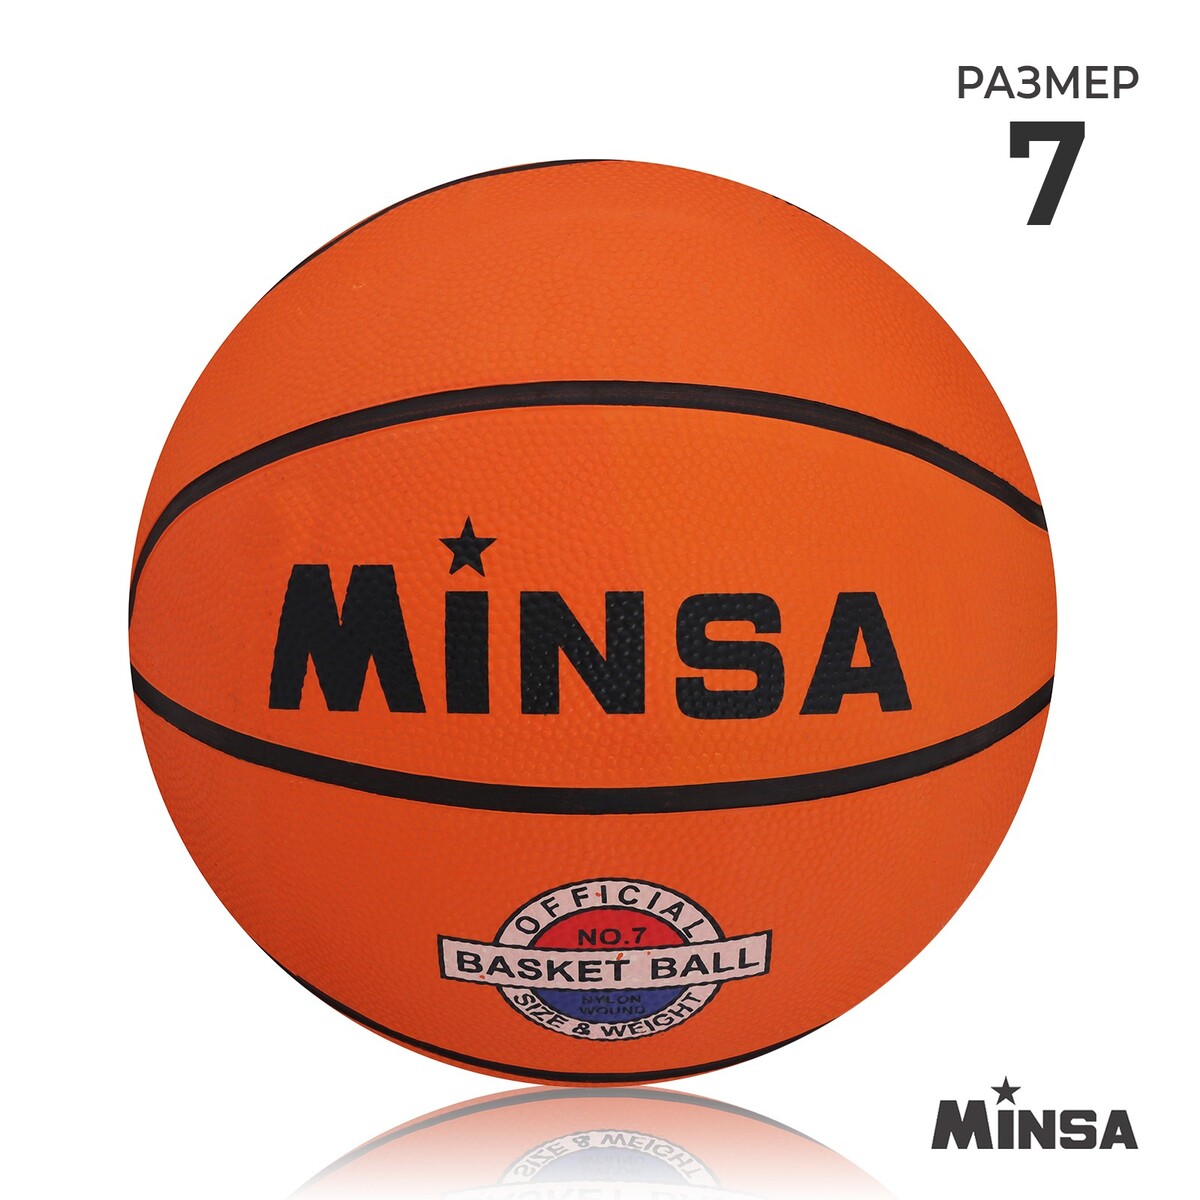 Мяч баскетбольный minsa, пвх, клееный, 8 панелей, р. 7 мяч баскетбольный minsa street пвх клееный 8 панелей р 7